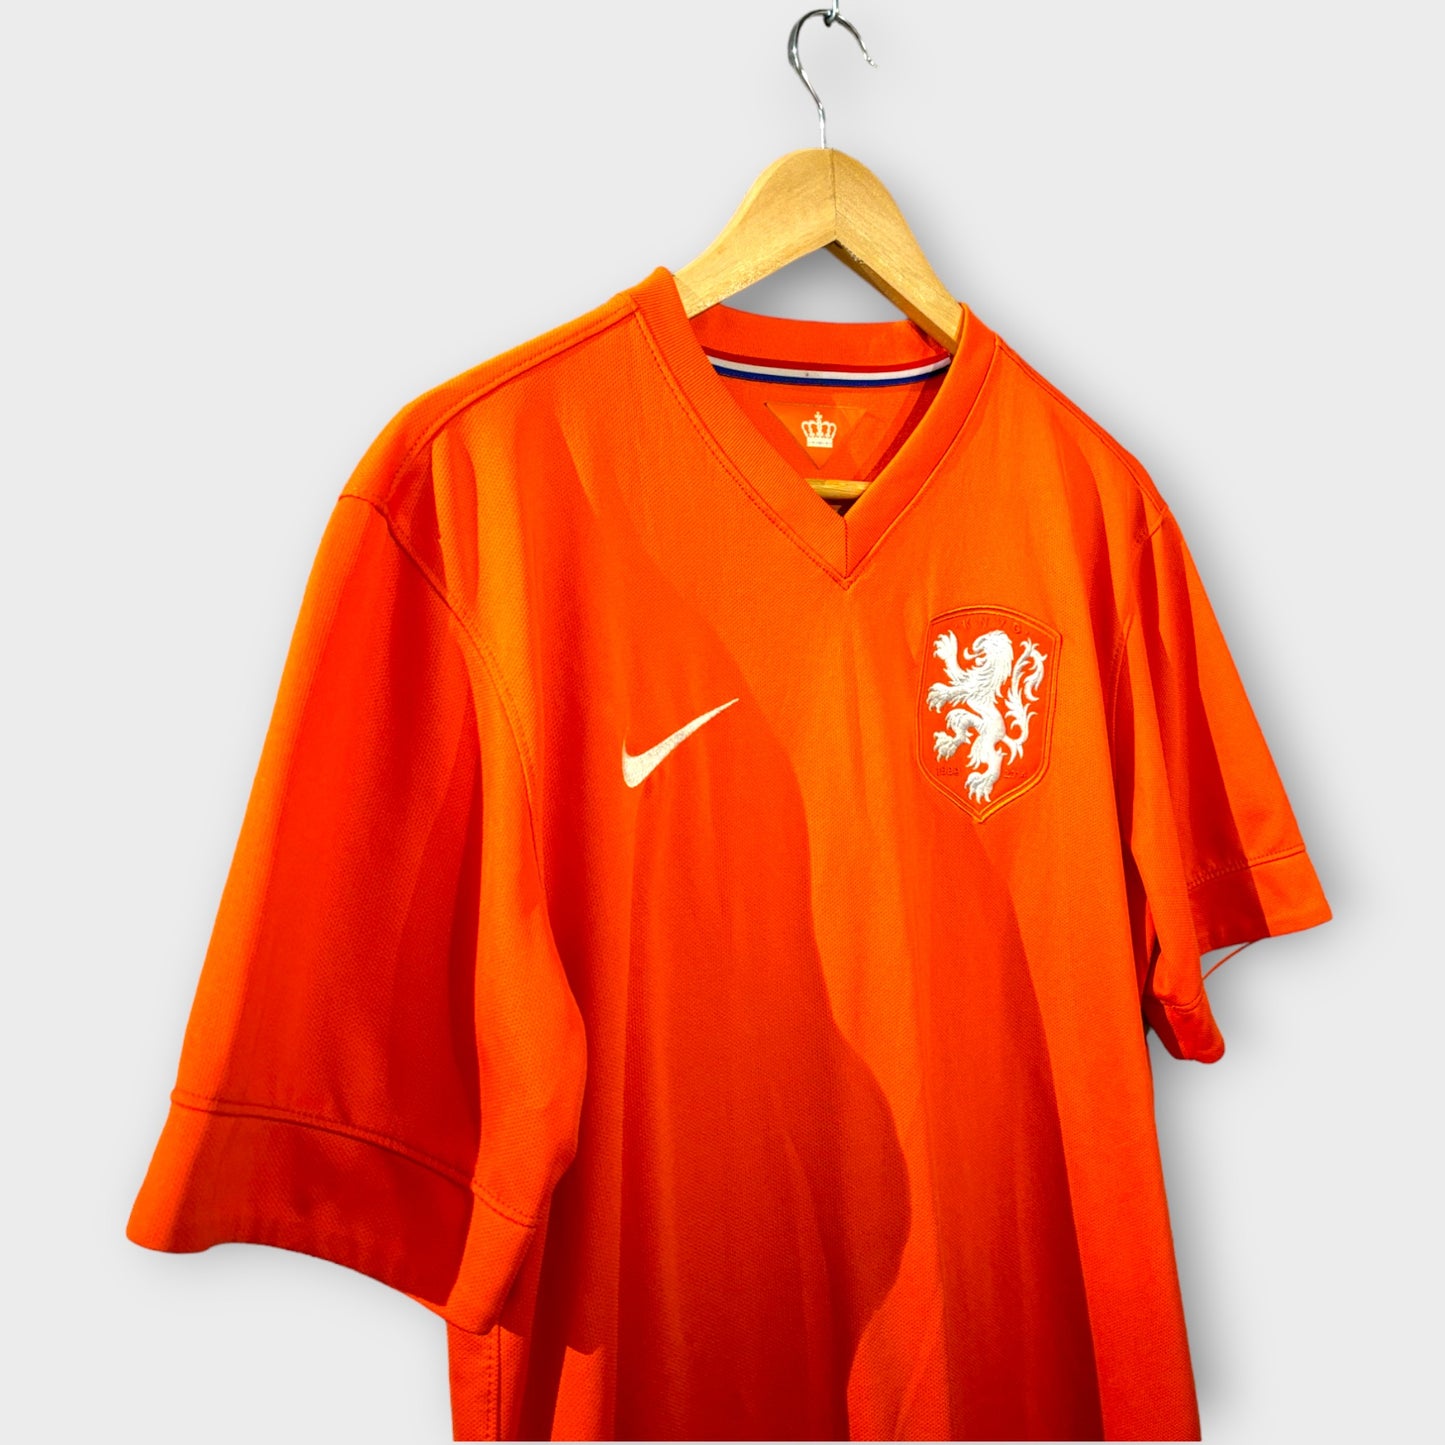 Netherlands 2014 Home Shirt (Medium)